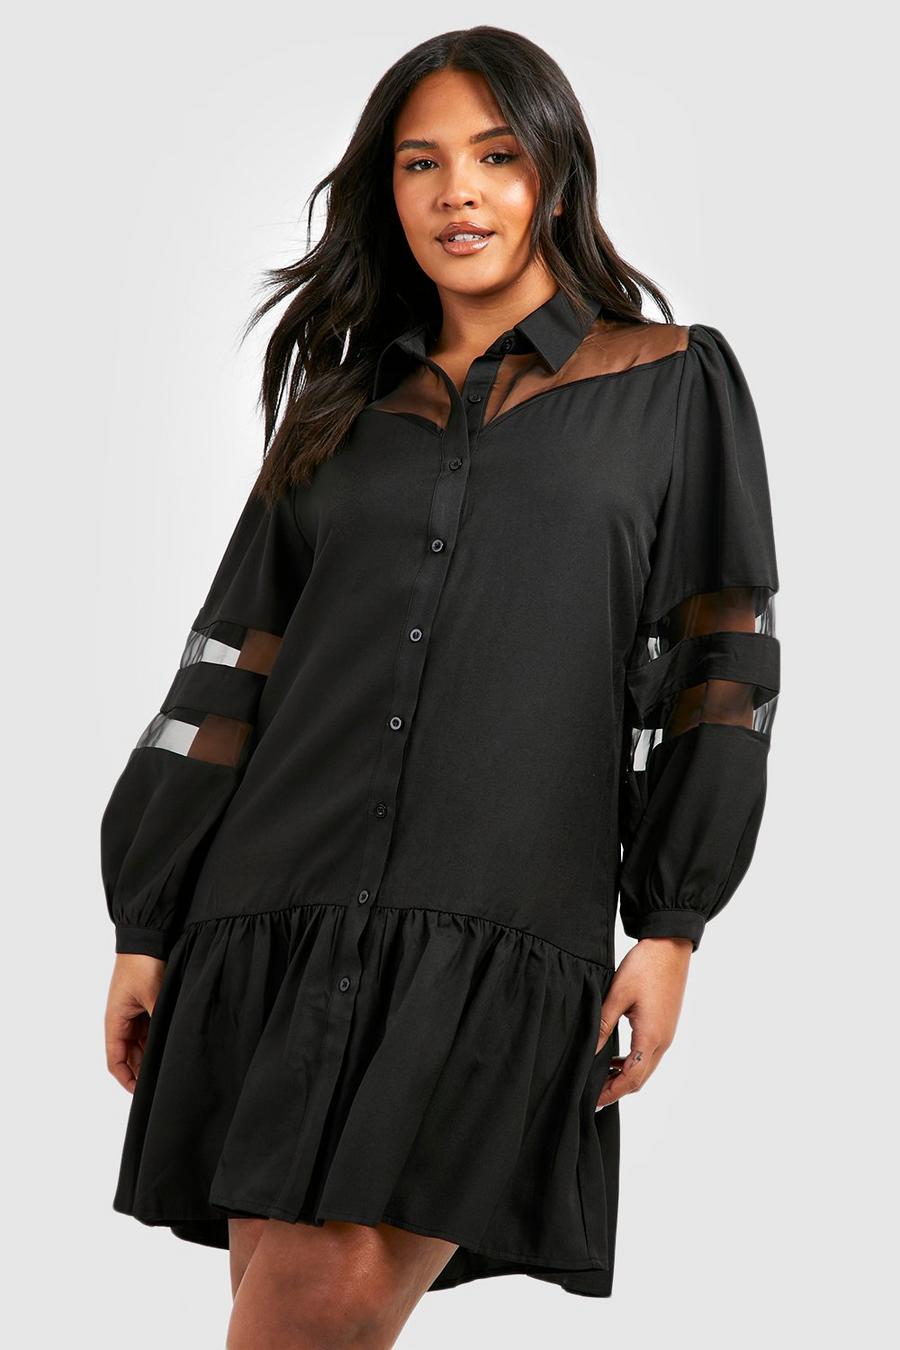 COPPEN Women Blouse Loose Button Plus Size Long Shirt Dress Cotton Tops Summer T-Shirt 2019 